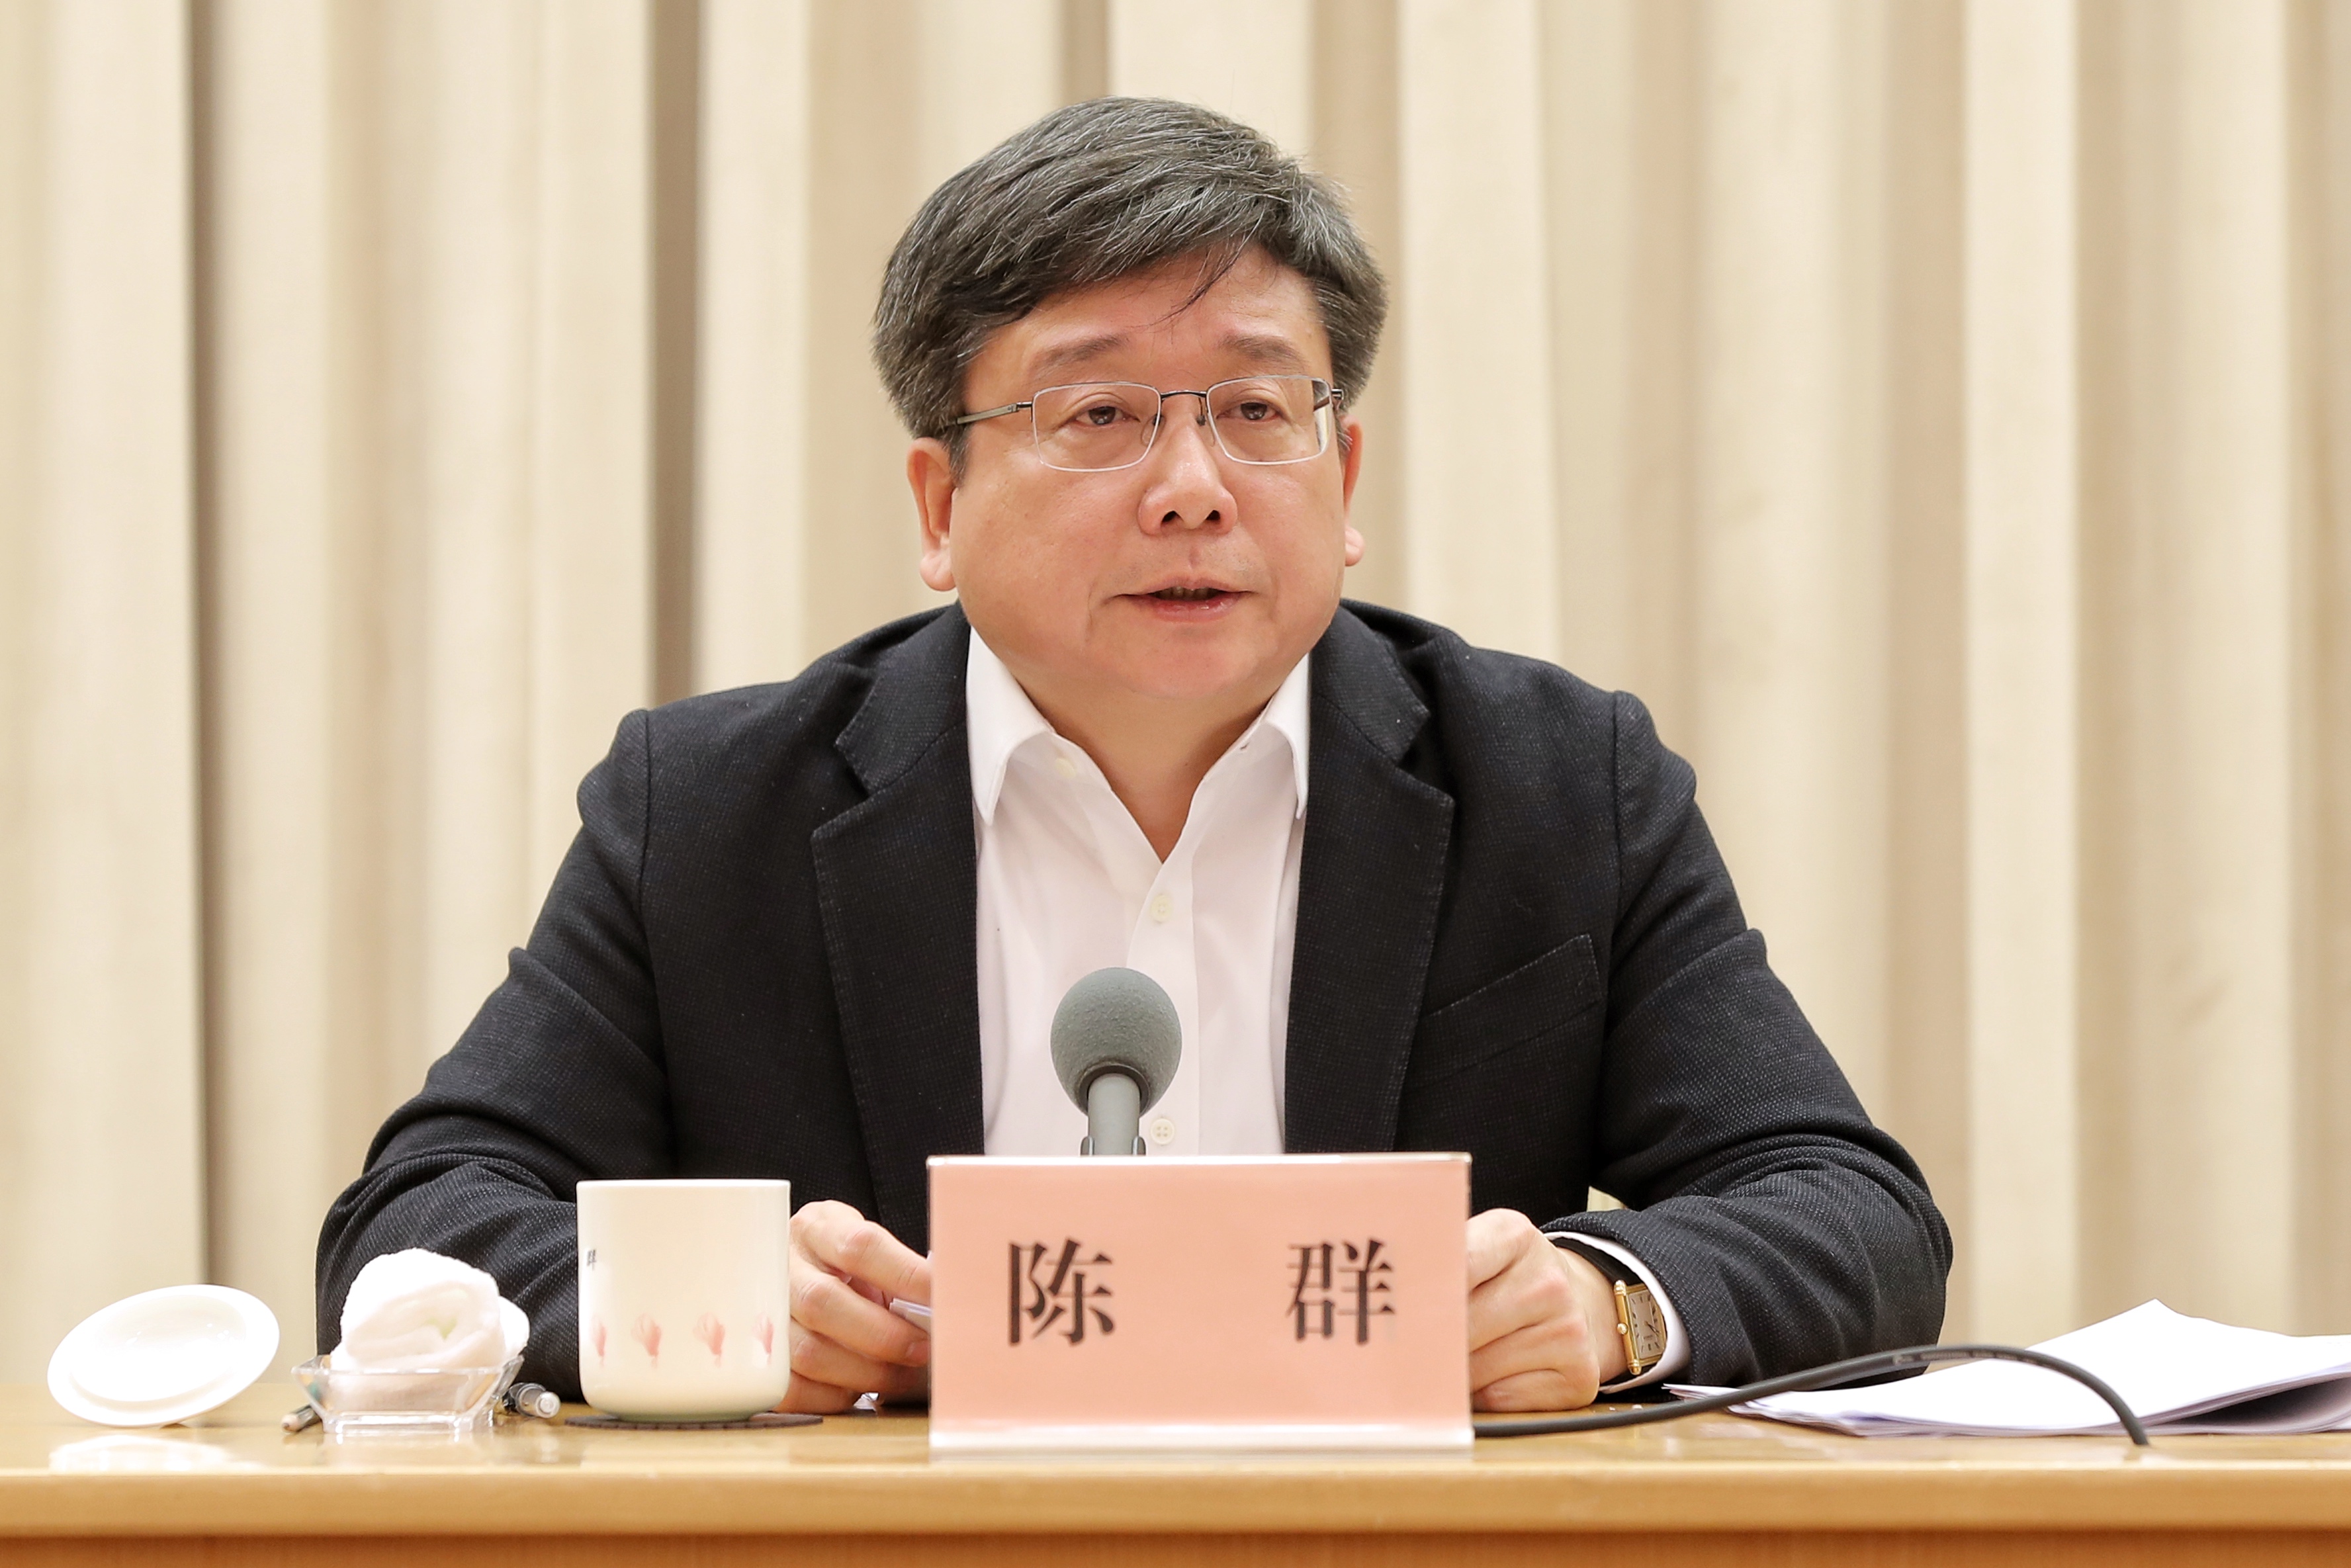 上海市副市长陈群。